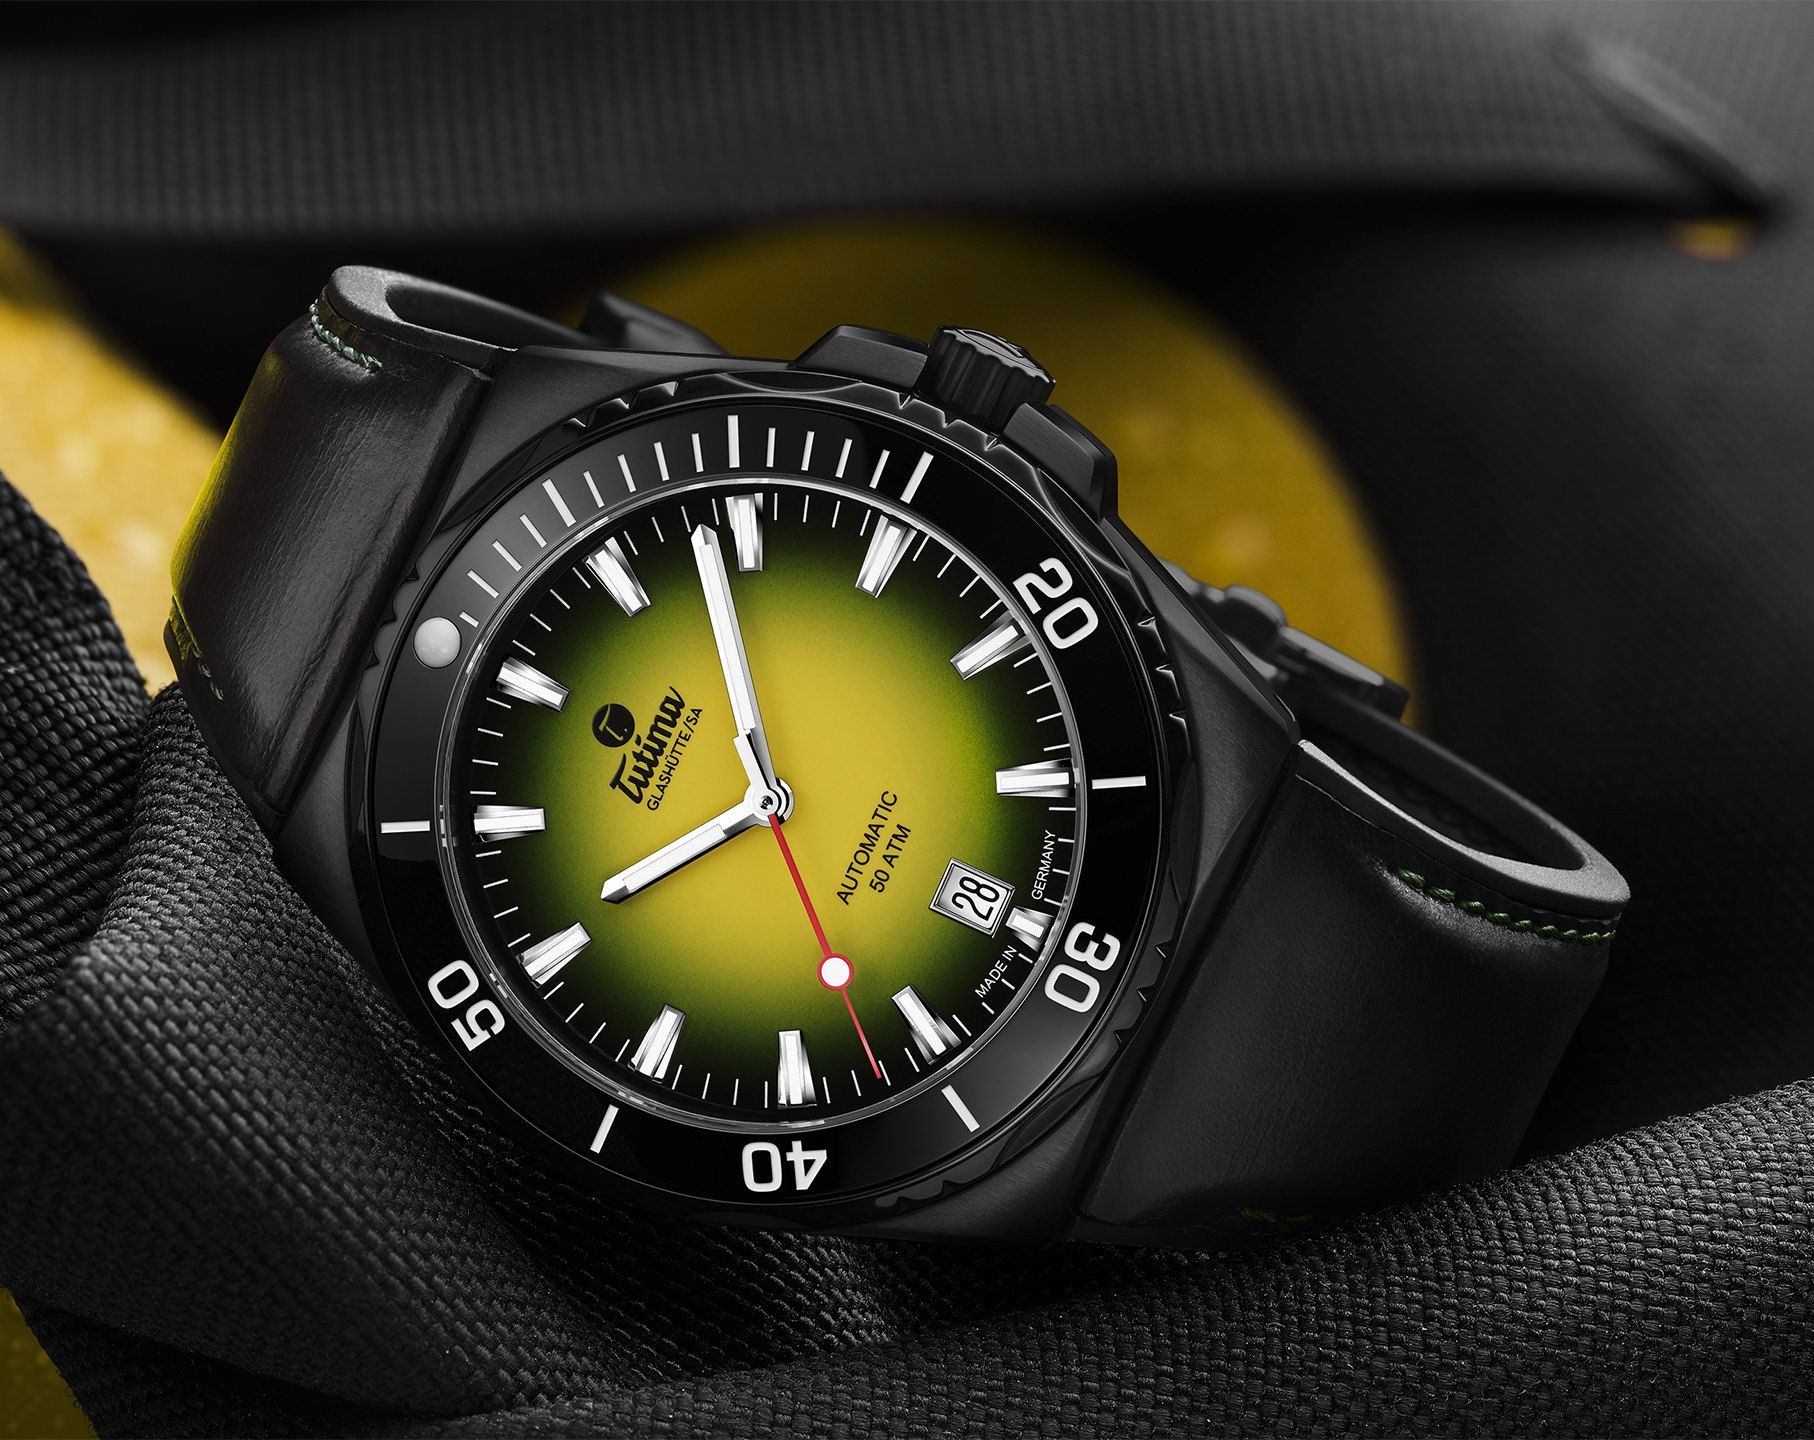 Tutima Glashütte Seven Seas S 40 mm Watch in Yellow Dial For Men - 2